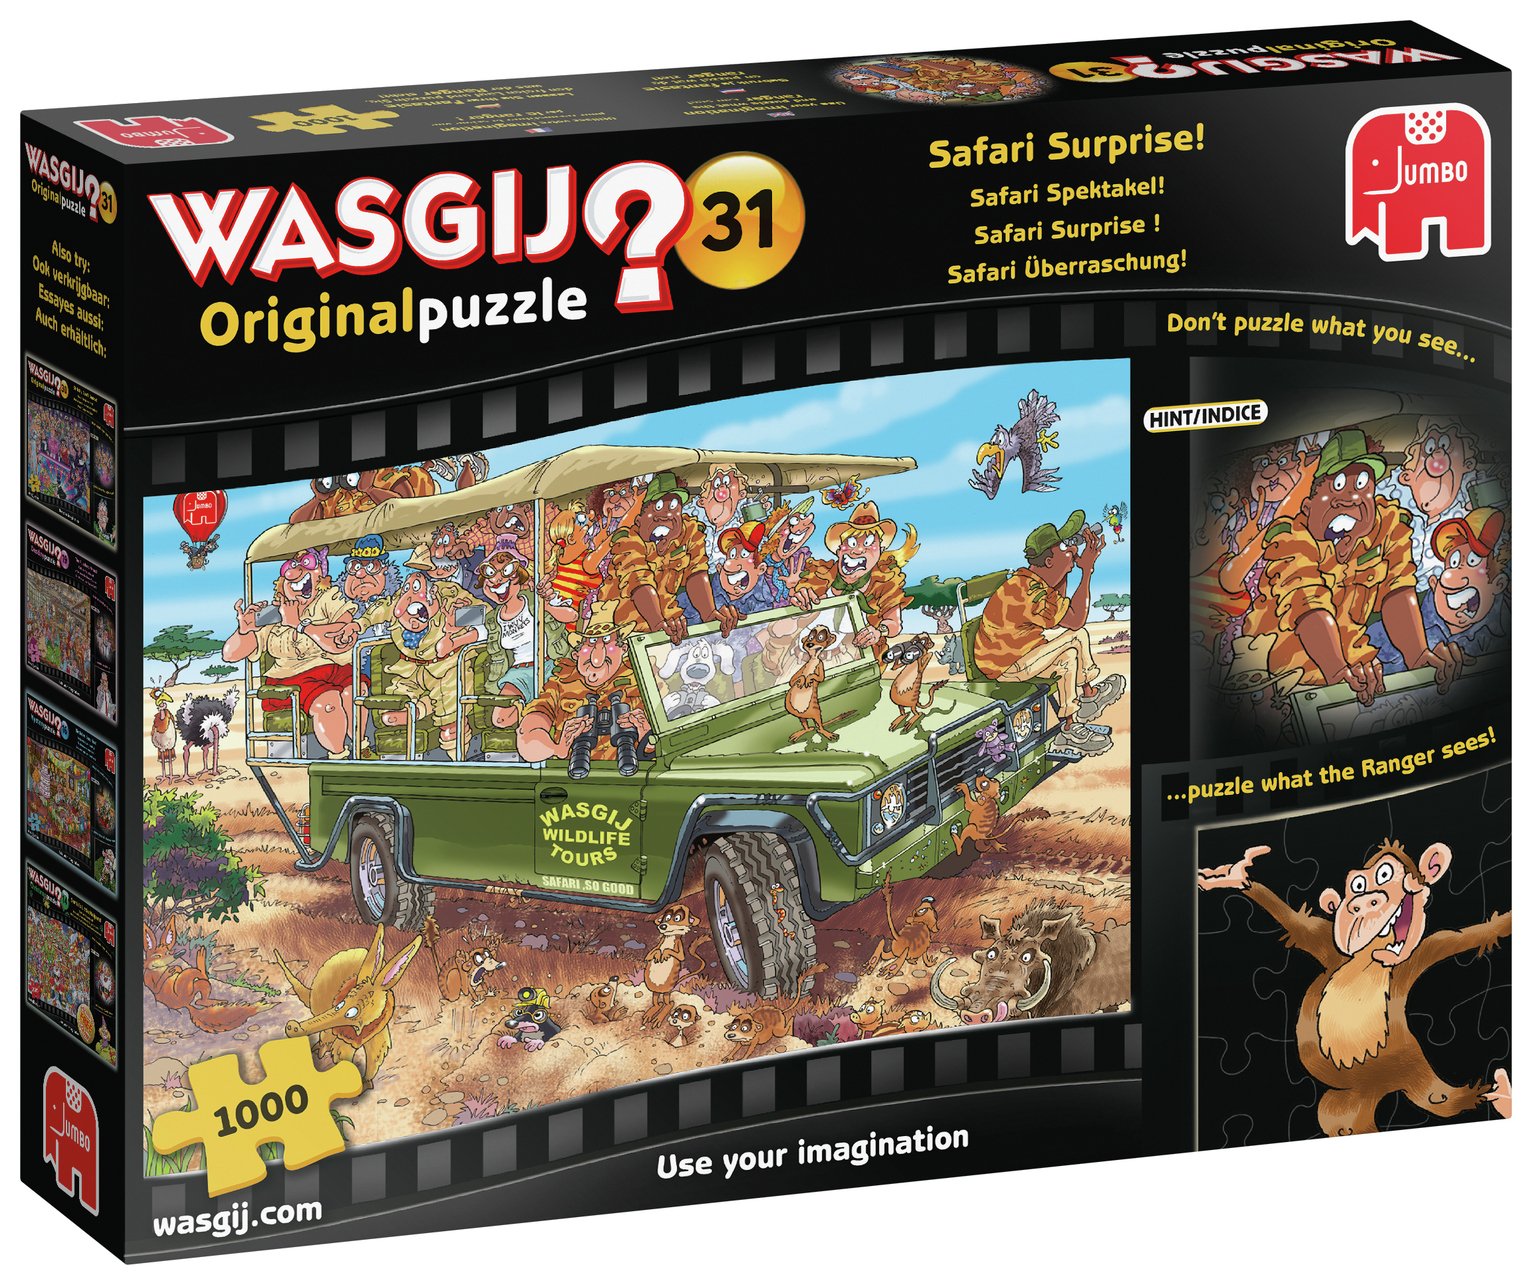 Wasgij Original 31 Safari Surprise Puzzle